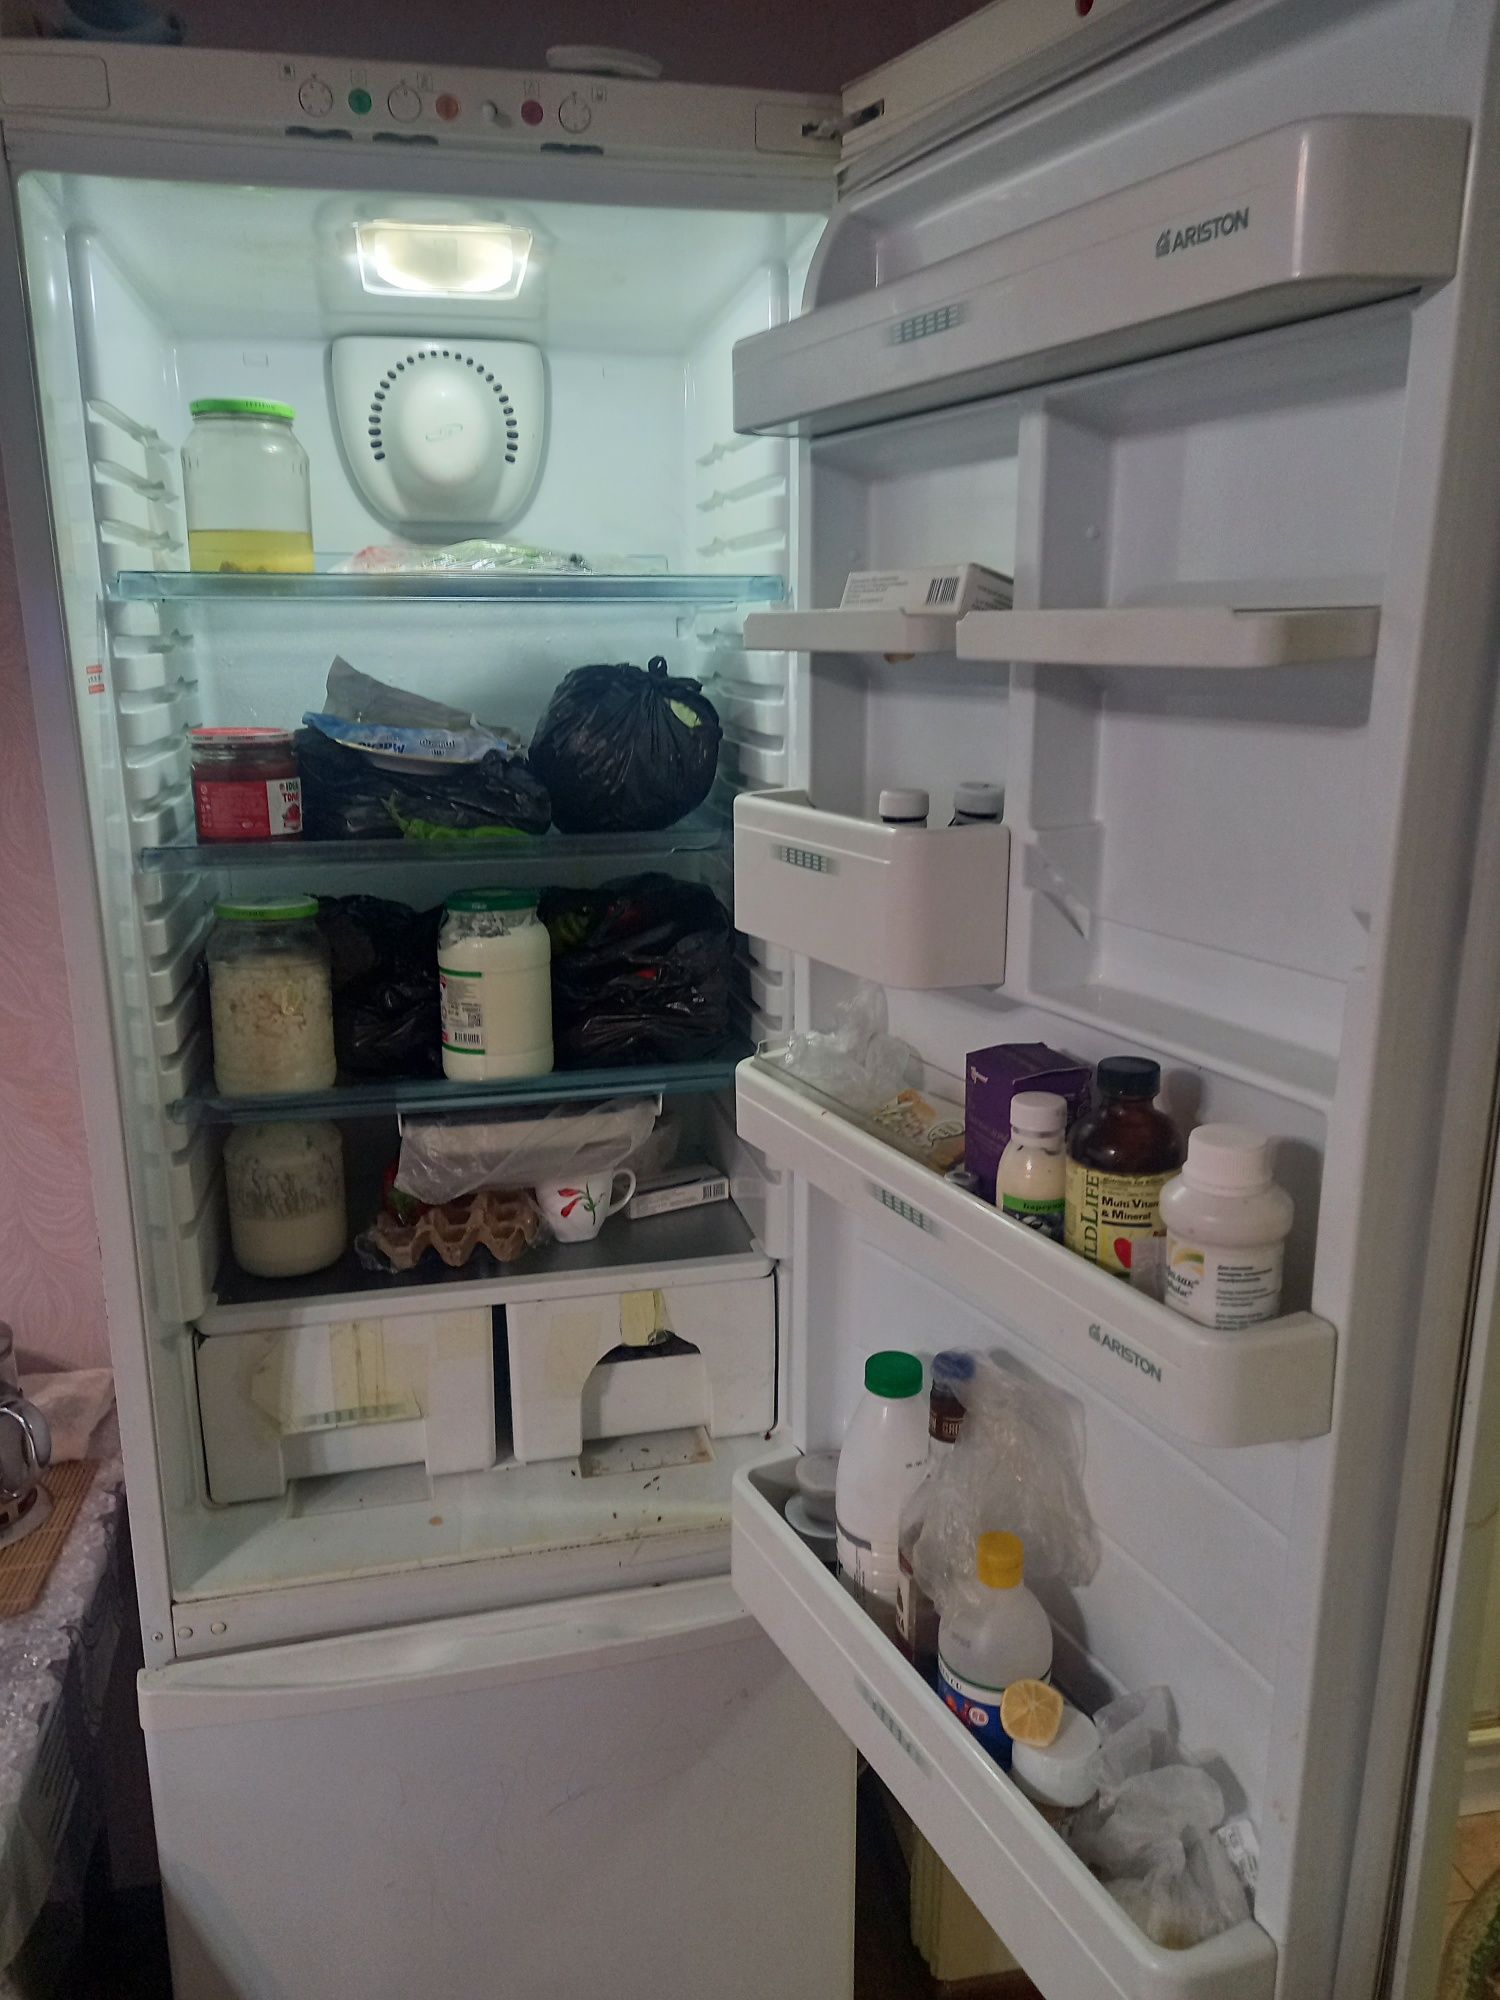 Аристон холодильник